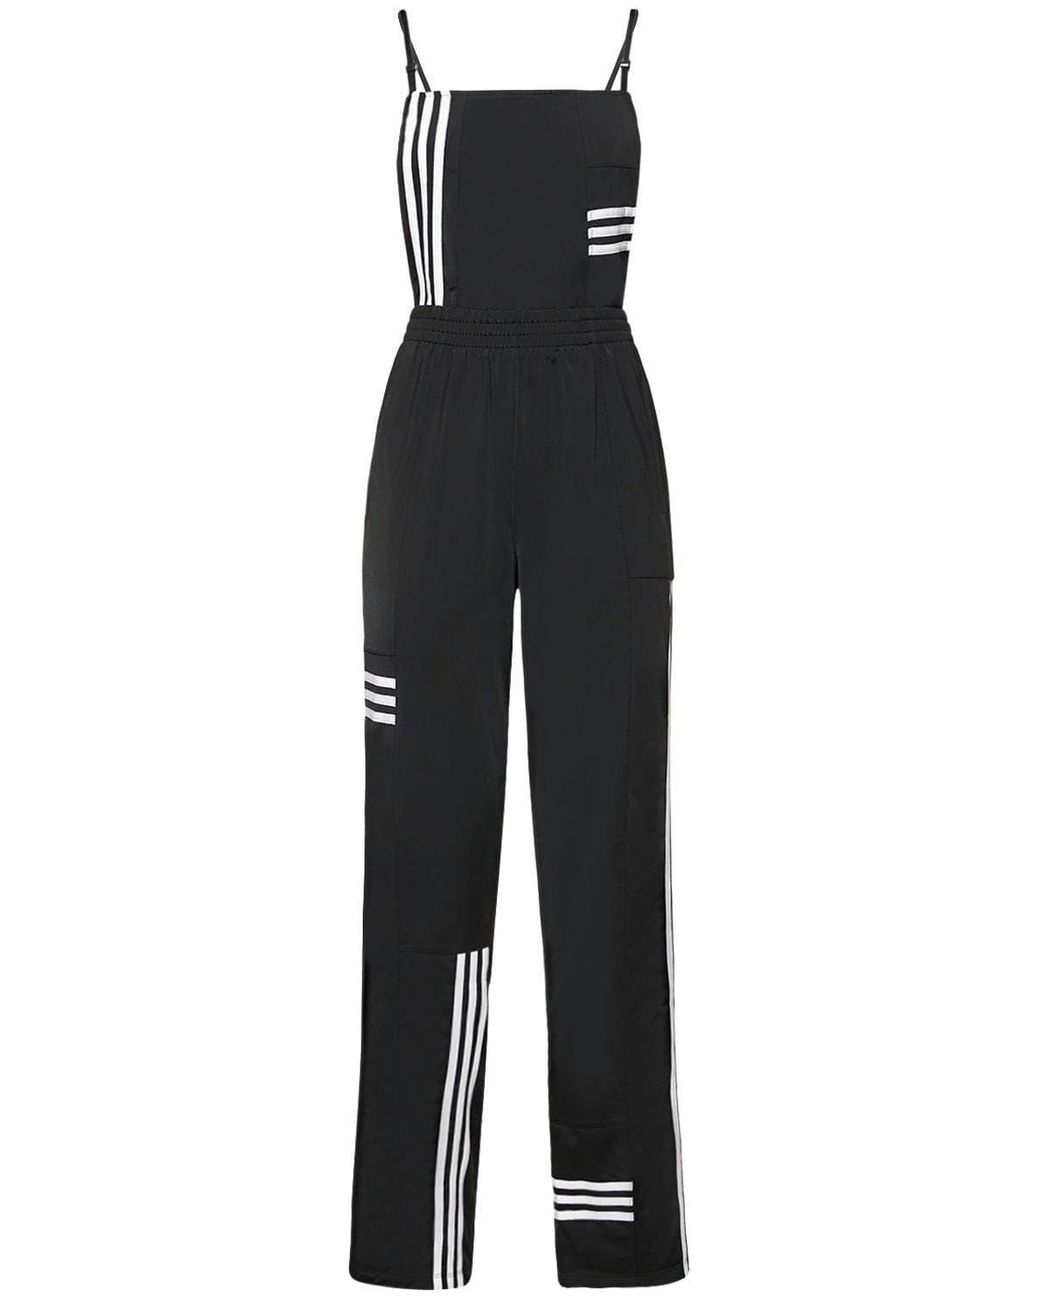 adidas Originals Striped Jumpsuit in Black | Lyst